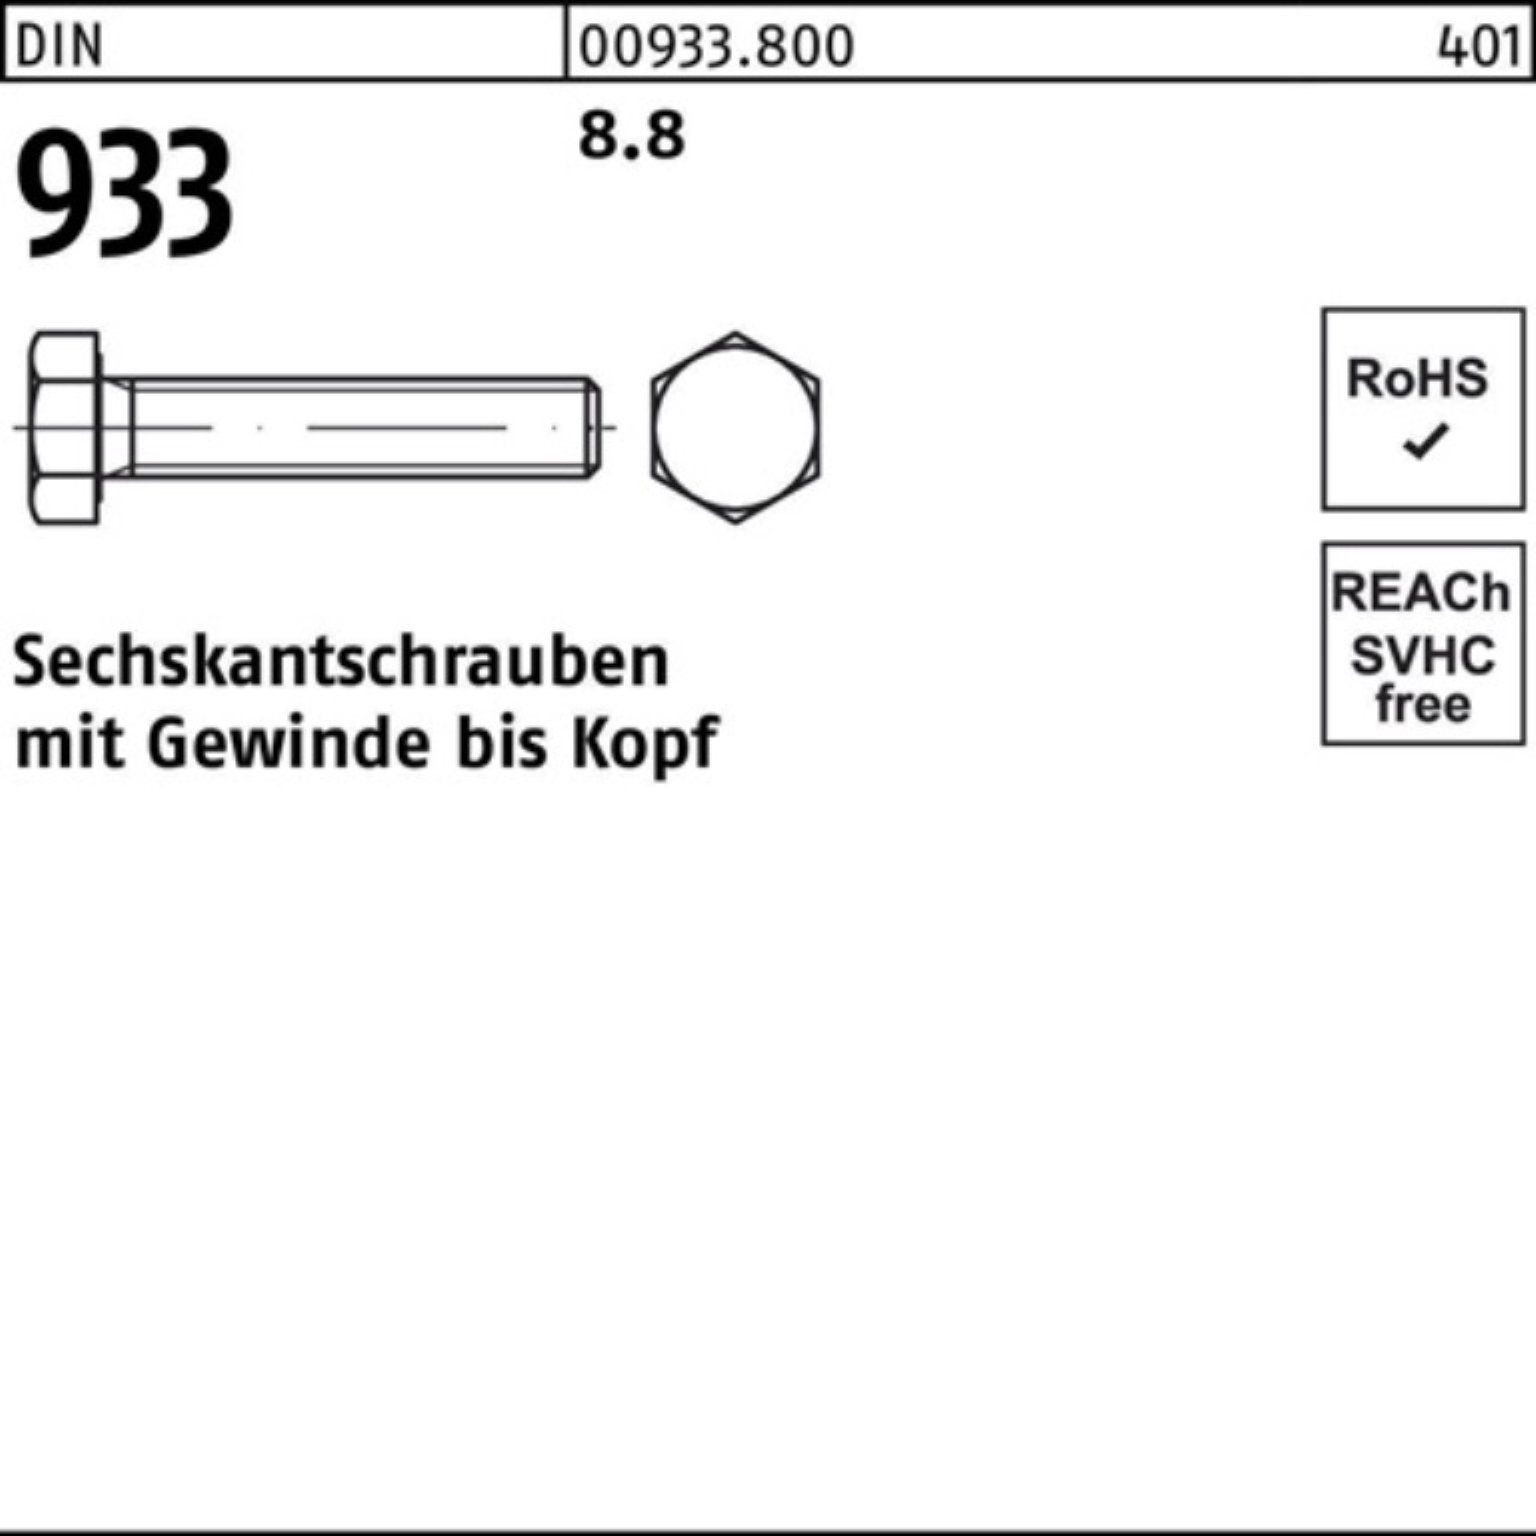 100er DIN Stück Reyher 1 8.8 VG M27x Pack 933 933 DIN 190 Sechskantschraube Sechskantschraube